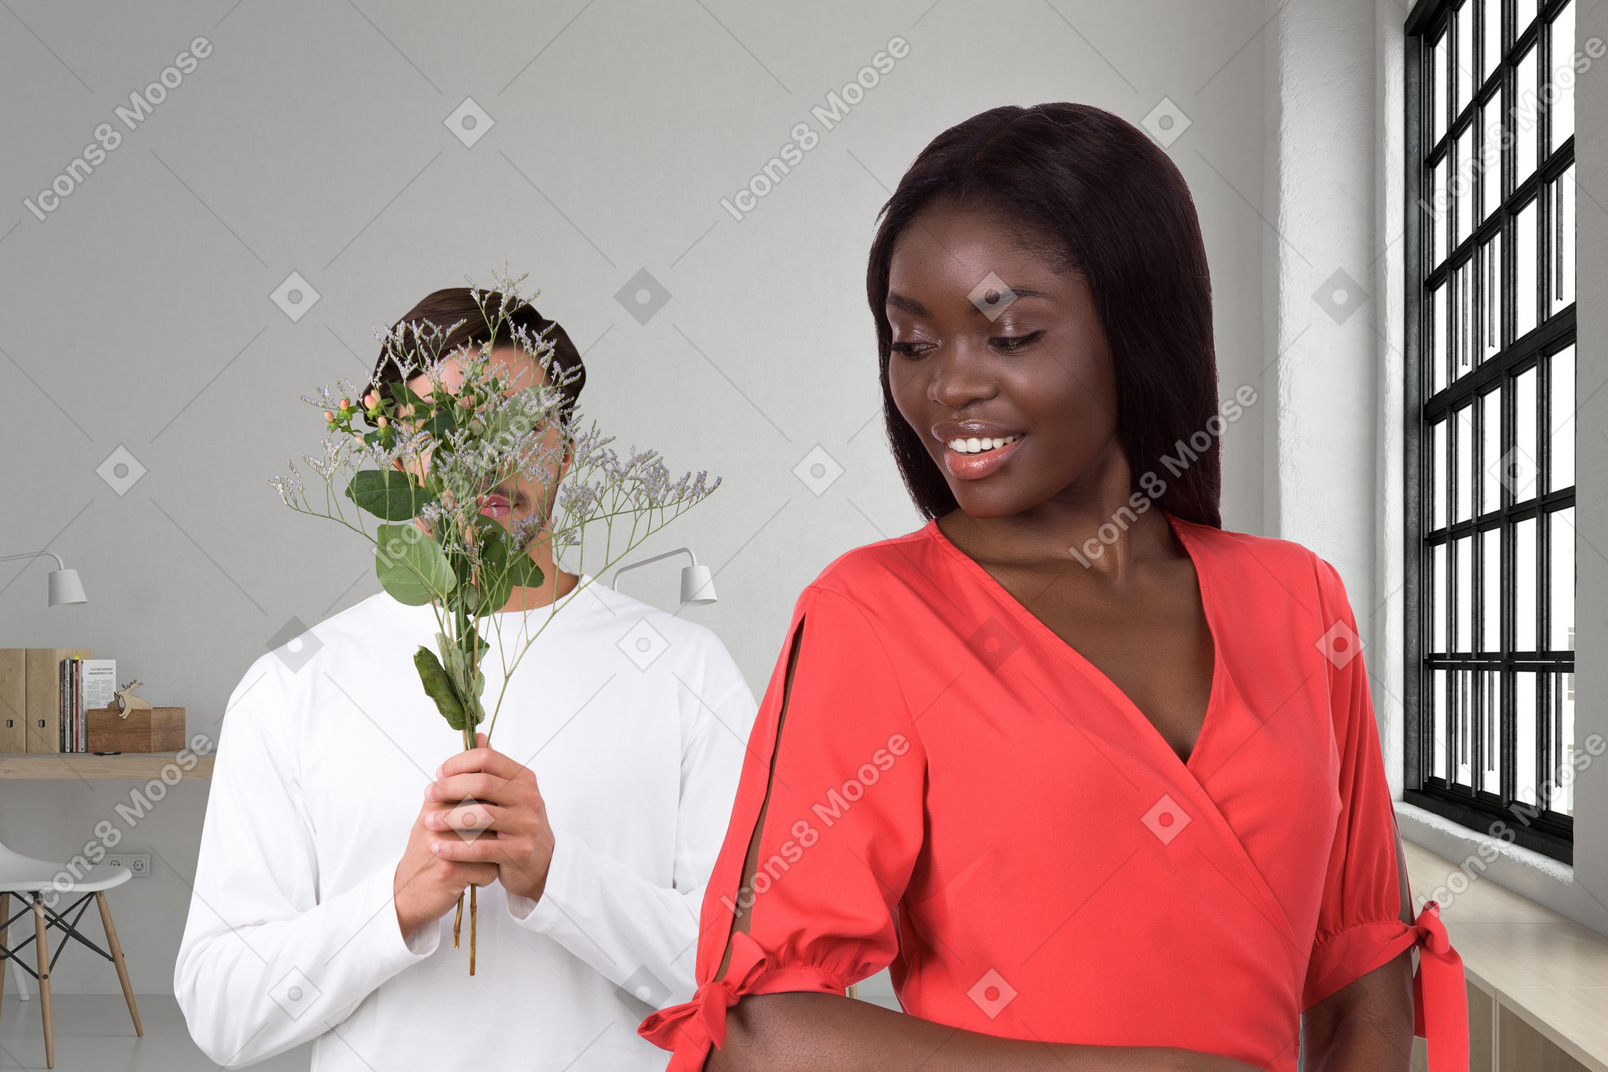 Uomo che dà a una donna un mazzo di fiori